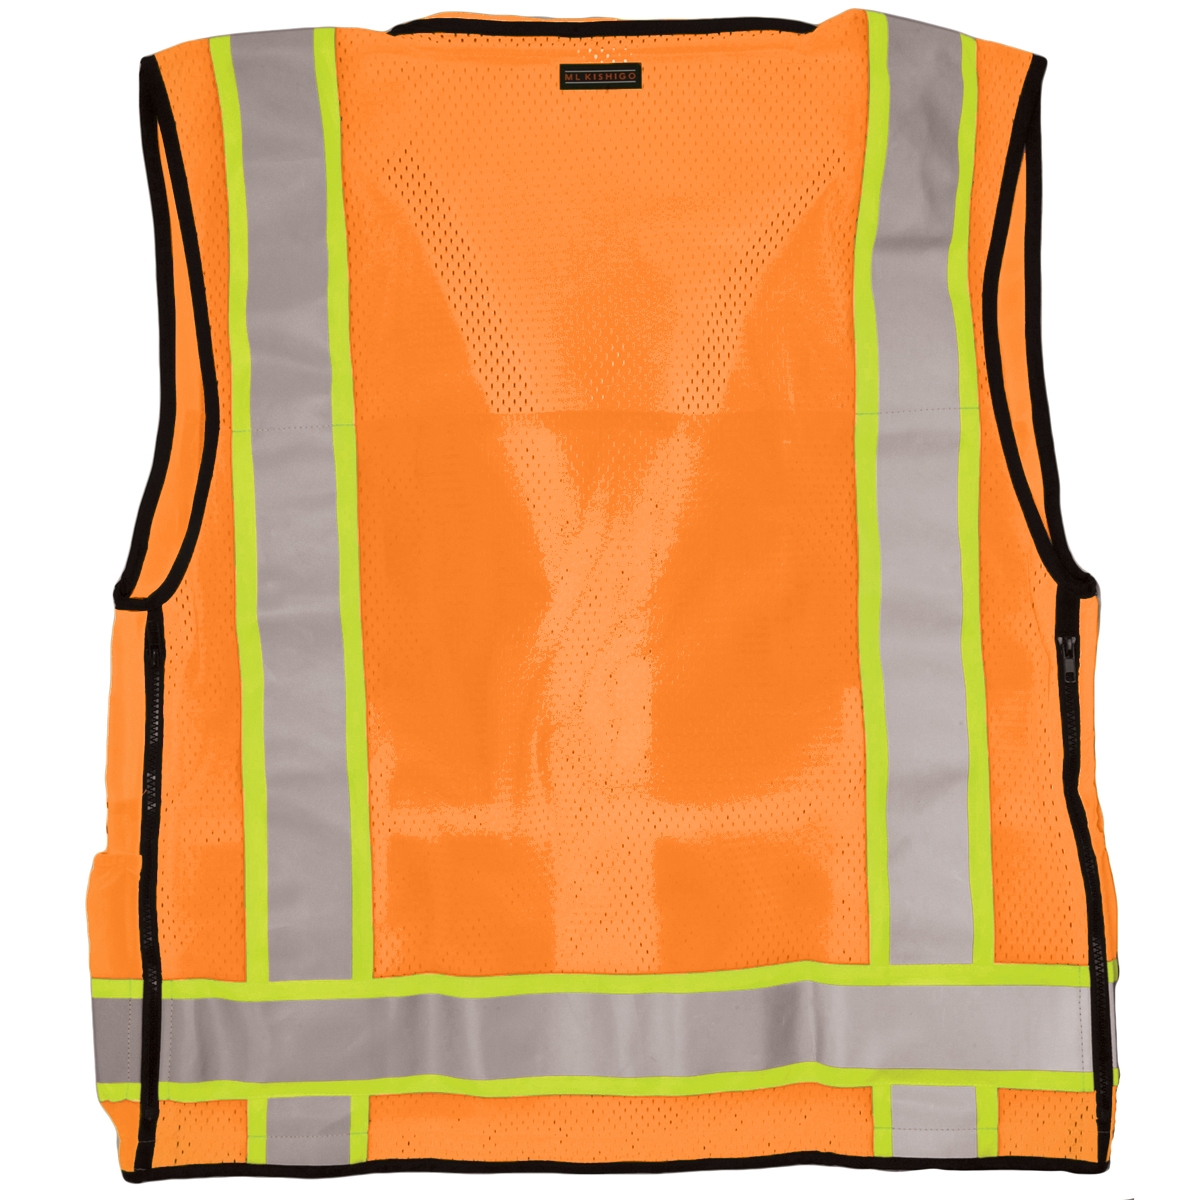 Kishigo S5001 Professional Surveyors Safety Vest Orange Full Source